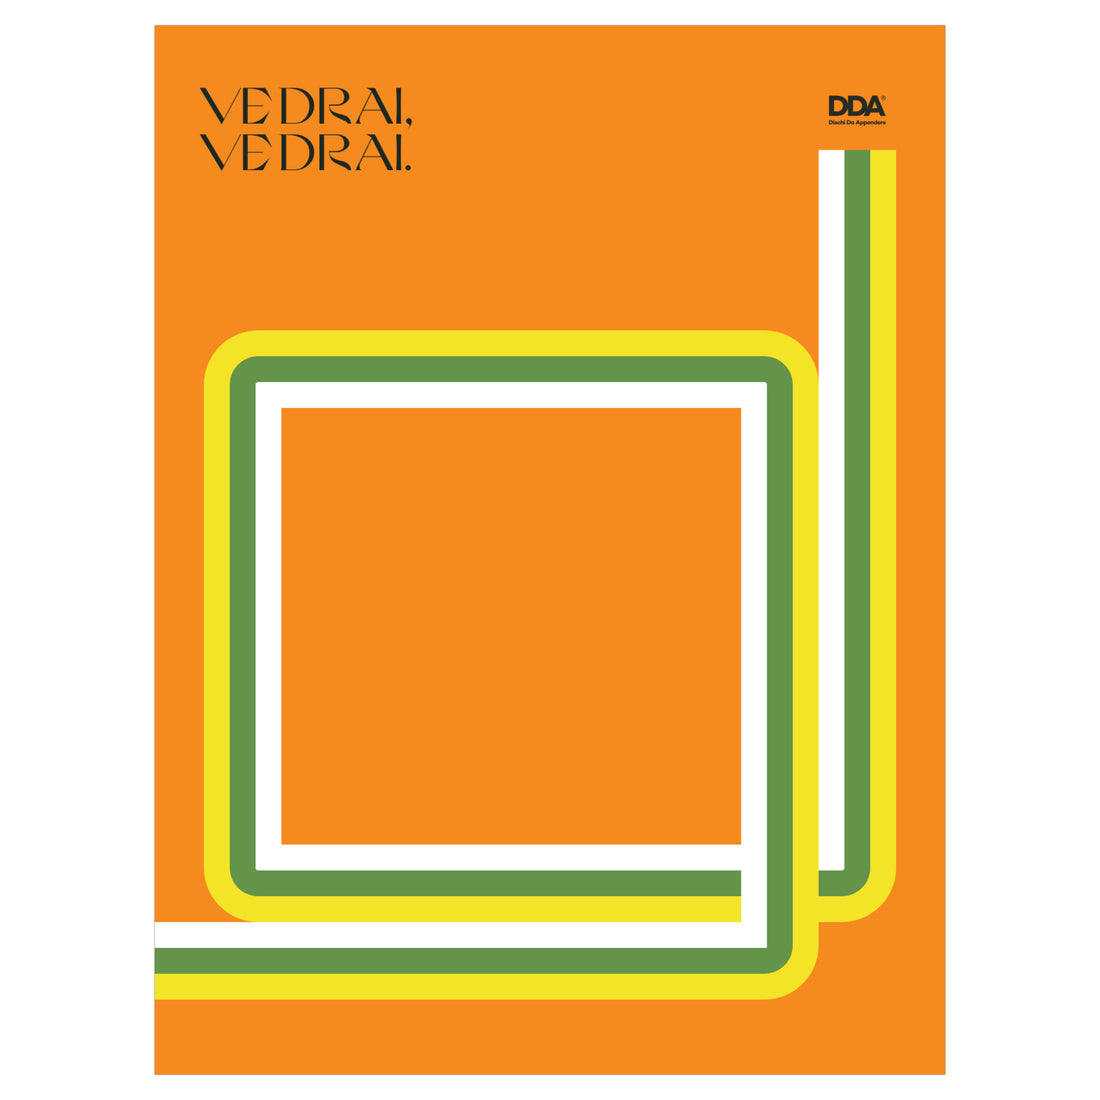 1965 – Vedrai